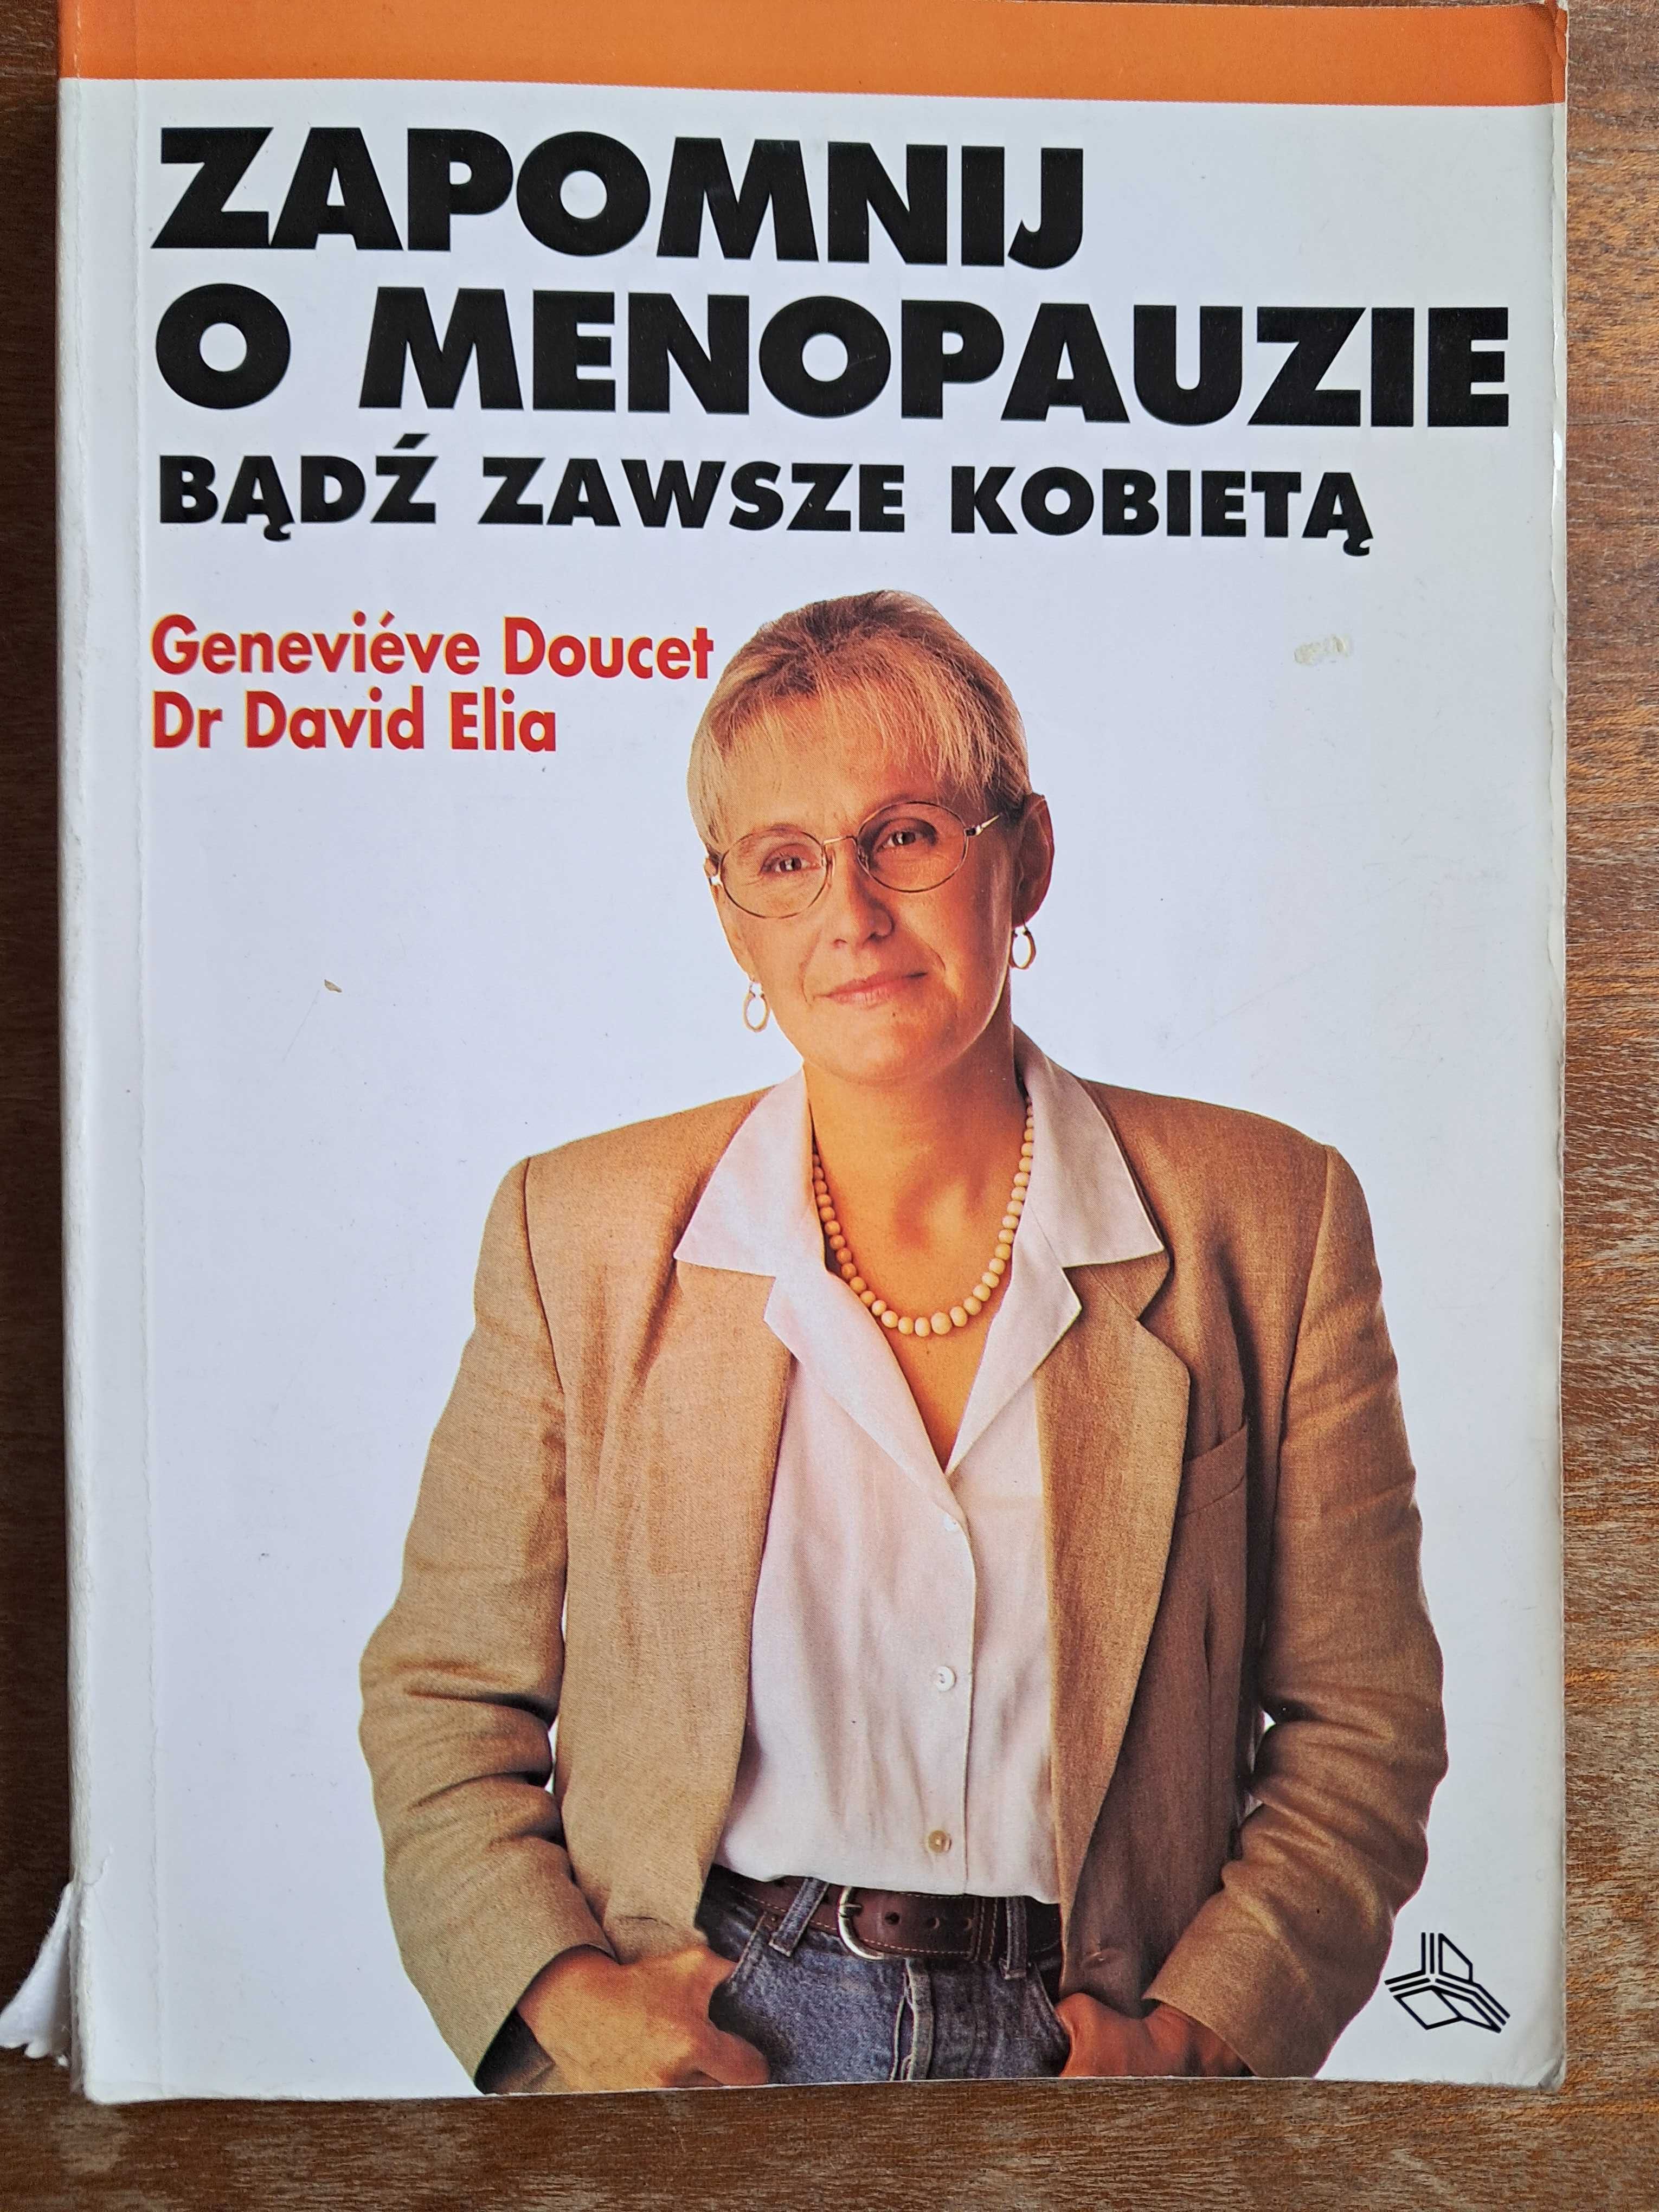 Książka "Zapomnij i menopauzie"